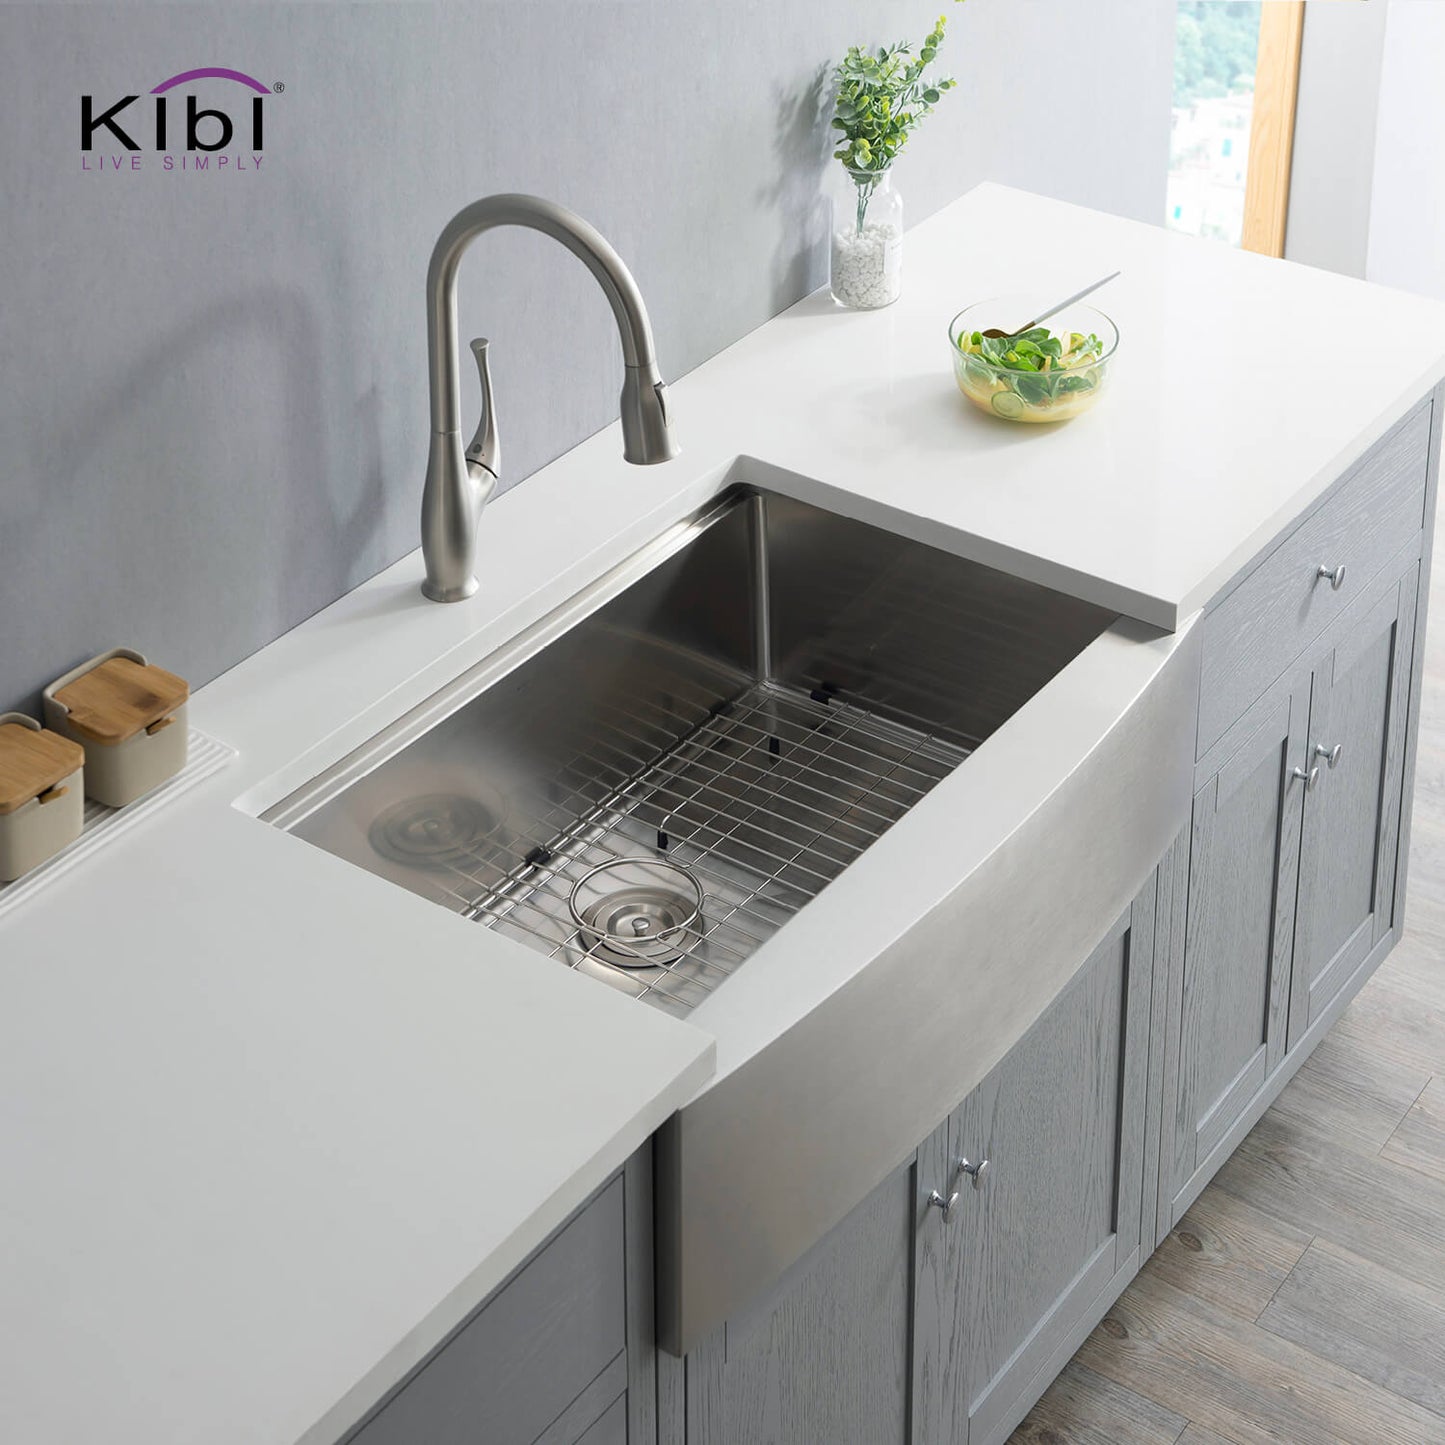 Kibi 33" x 22" x 10" Single Bowl Farmhouse Apron Kitchen Sink With Satin Finish